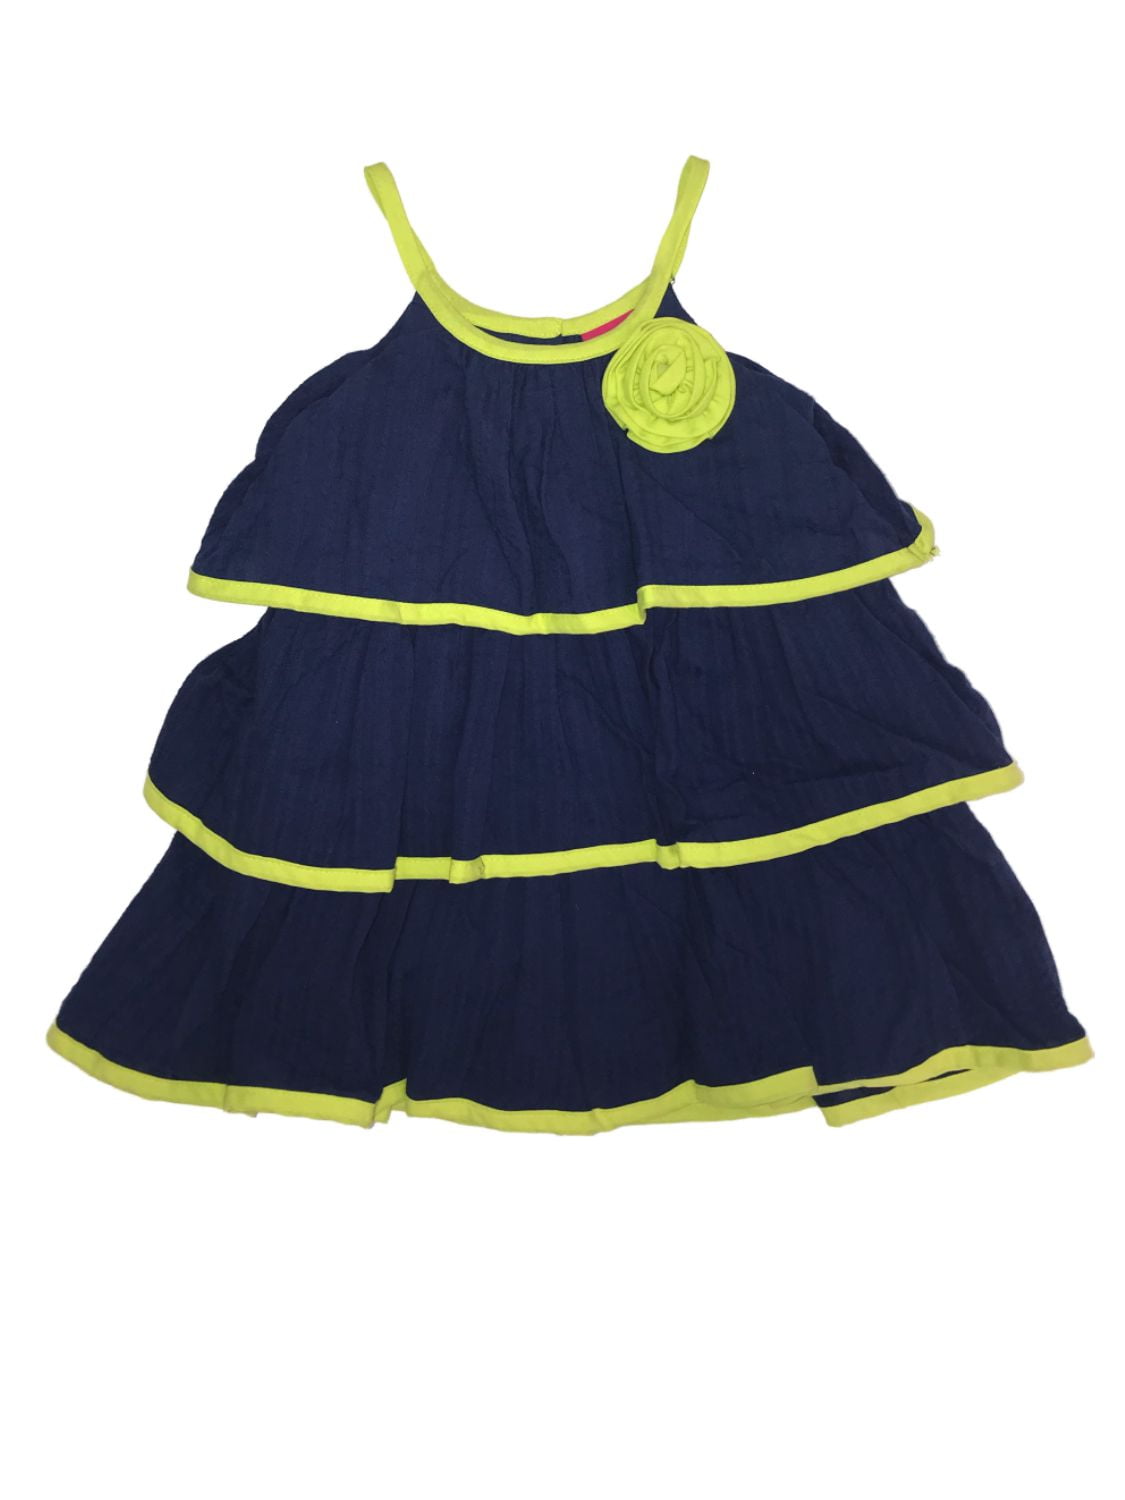 Toddler Girl 2T-4T Navy Blue White Yellow Tiered Halter Summer Dress Sundress 